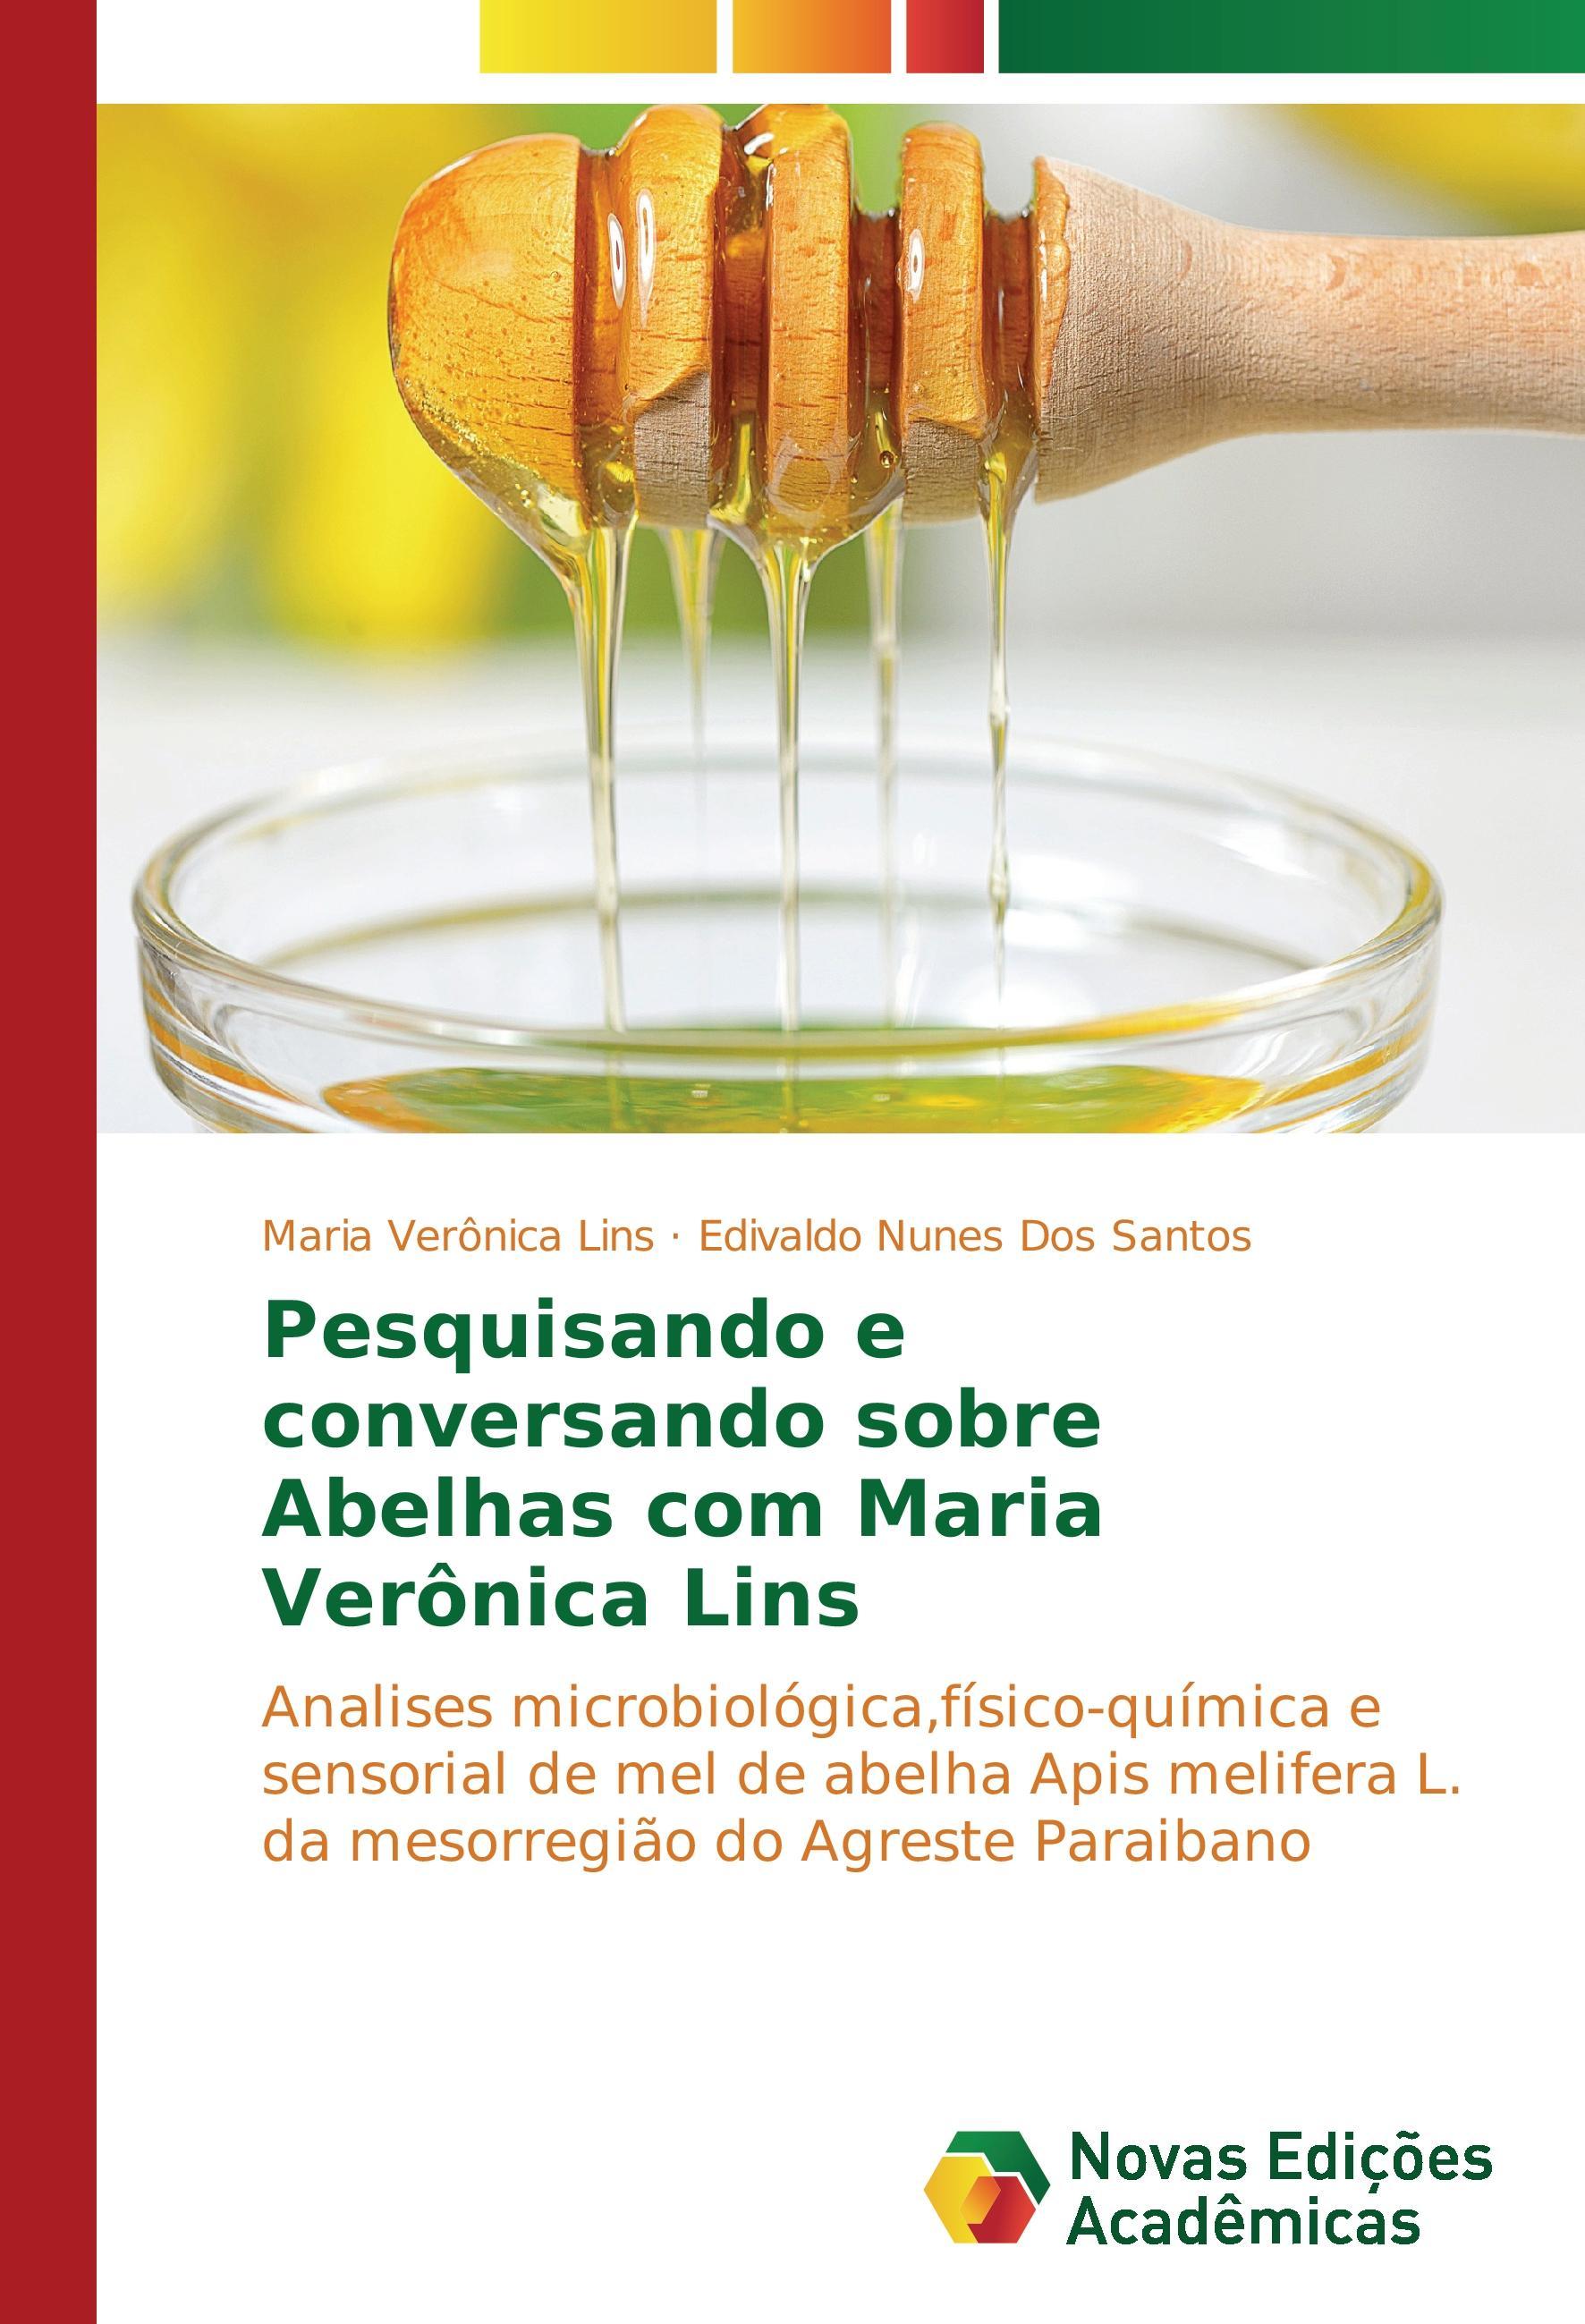 Pesquisando e conversando sobre Abelhas com Maria Verônica Lins - Lins, Maria Verônica Dos Santos, Edivaldo Nunes